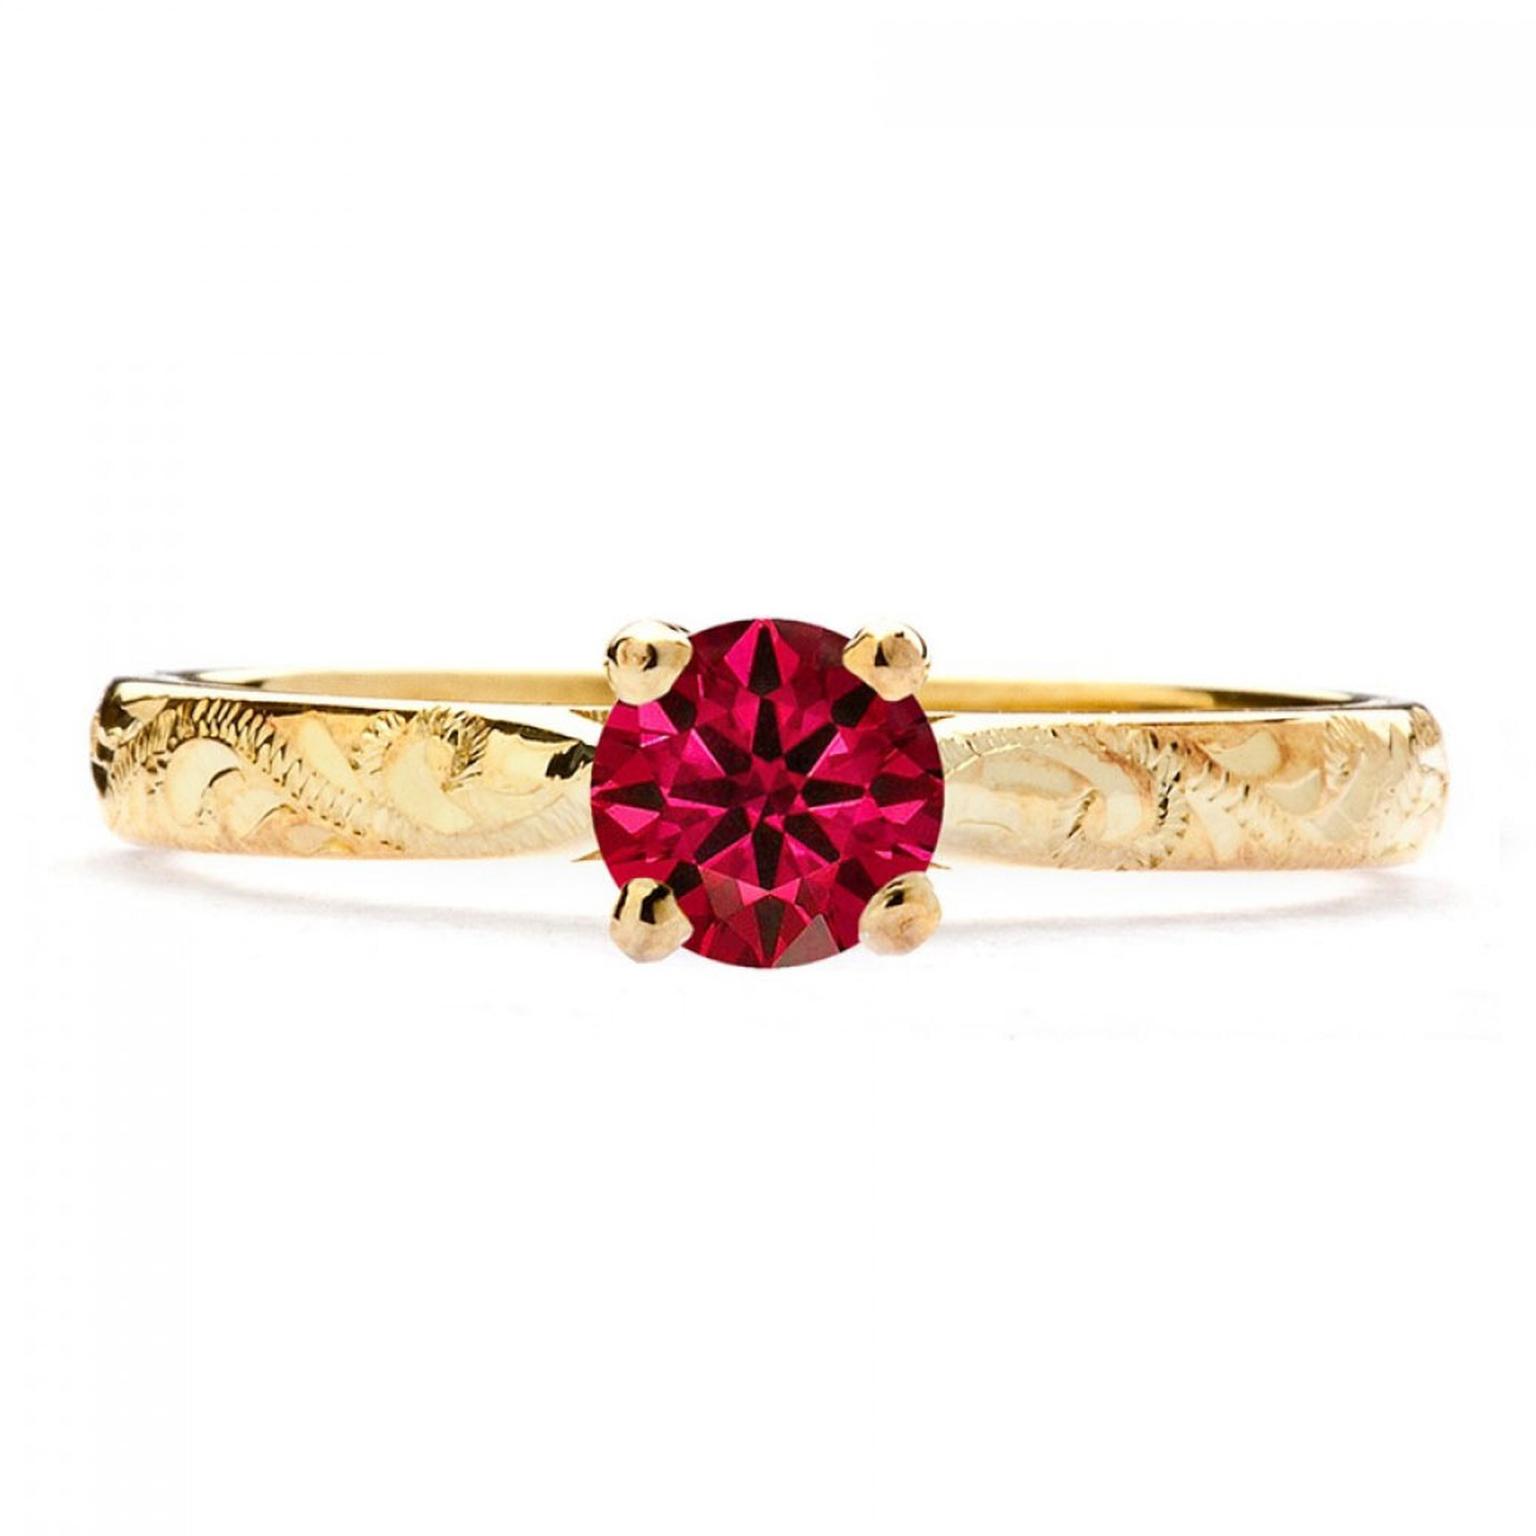 Arabel Lebrusan Athena ruby engagement ring